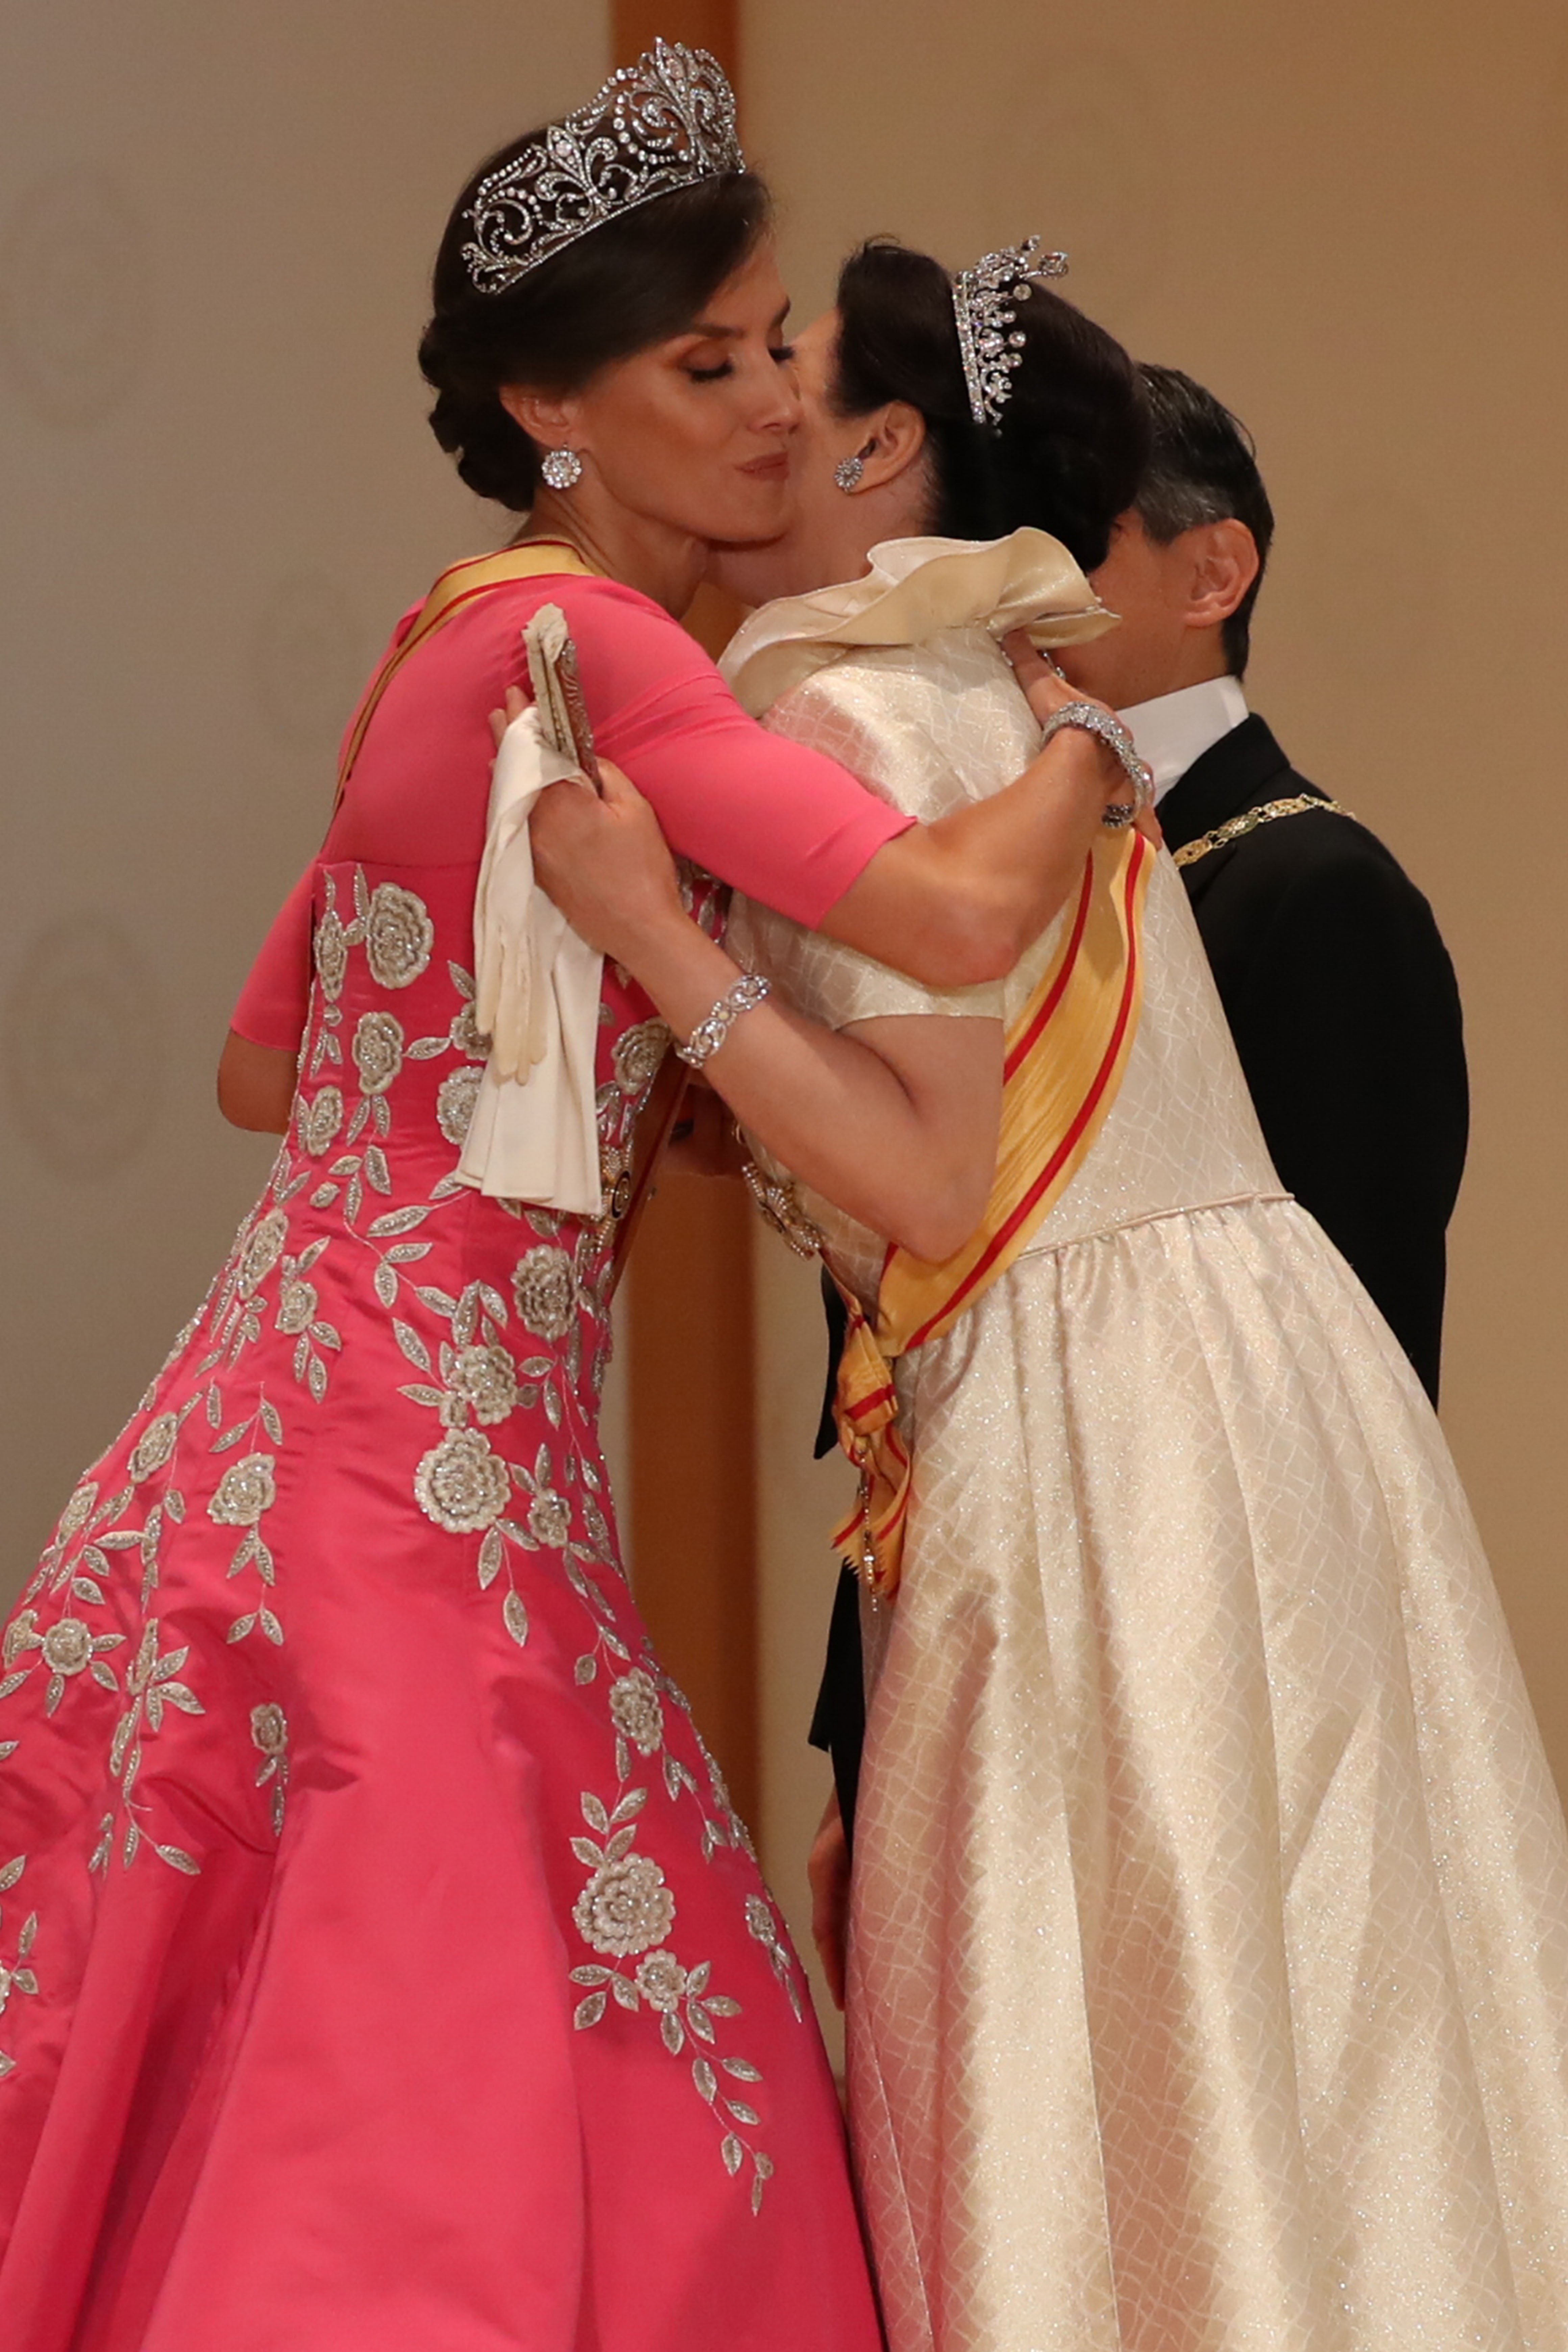 Foto oculta de Letizia en Japón: previa al gesto impresentable con la emperatriz